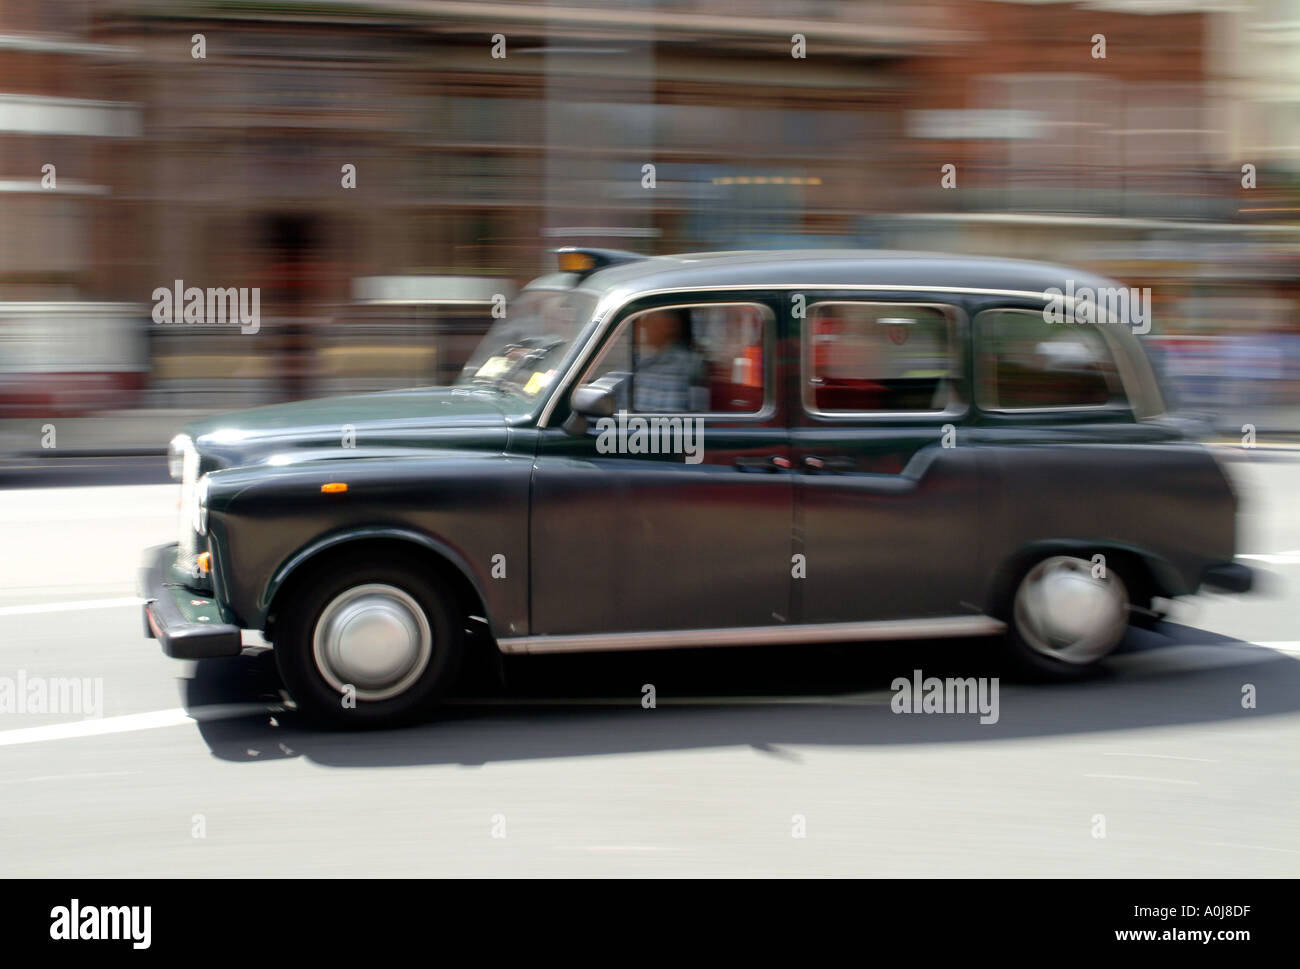 Einem schwarzen Taxi in London. Stockfoto